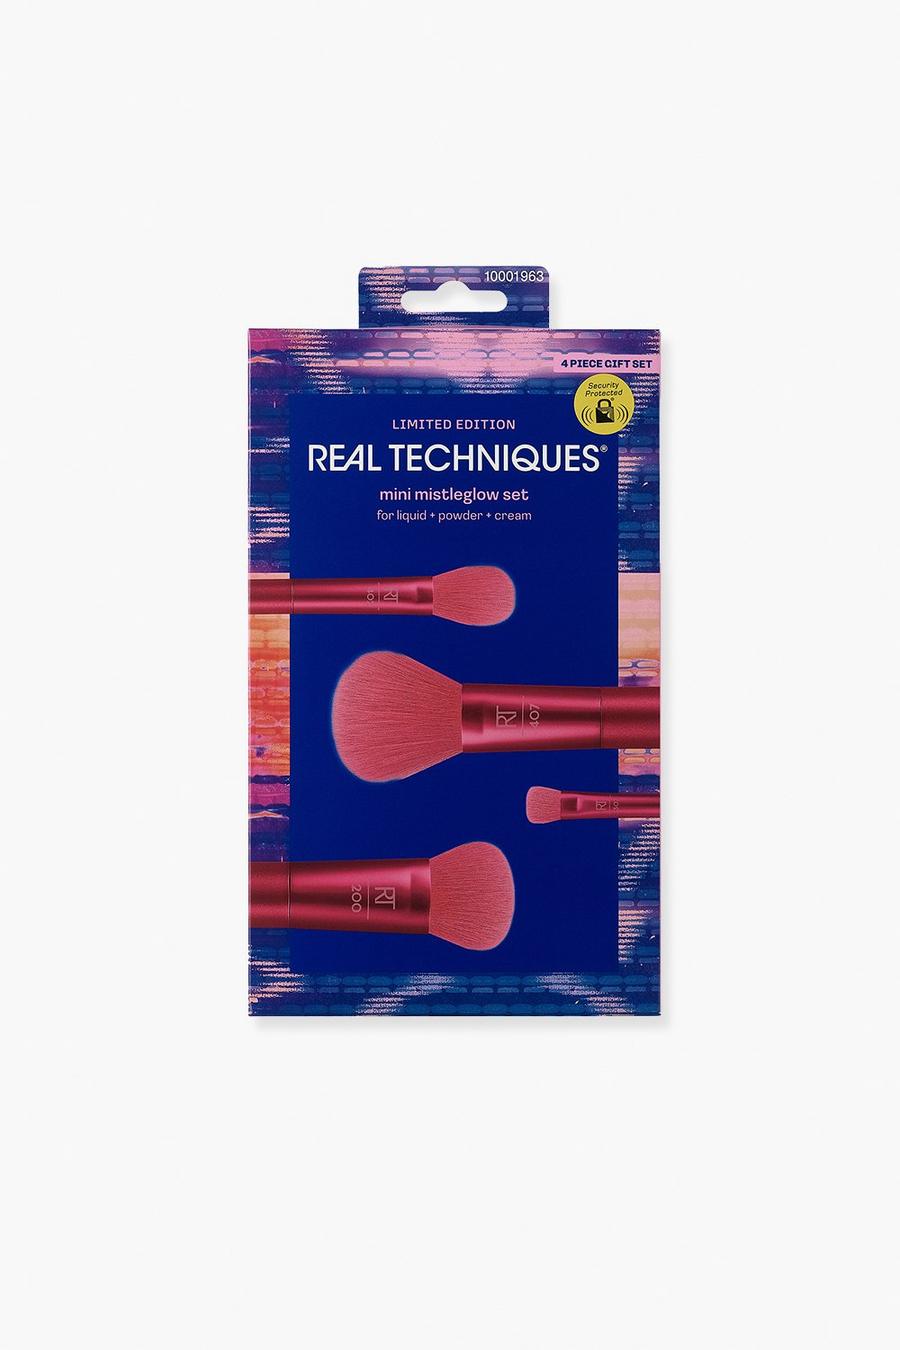 Real Techniques - Lot de pinceaux - Mistleglow, Red rouge